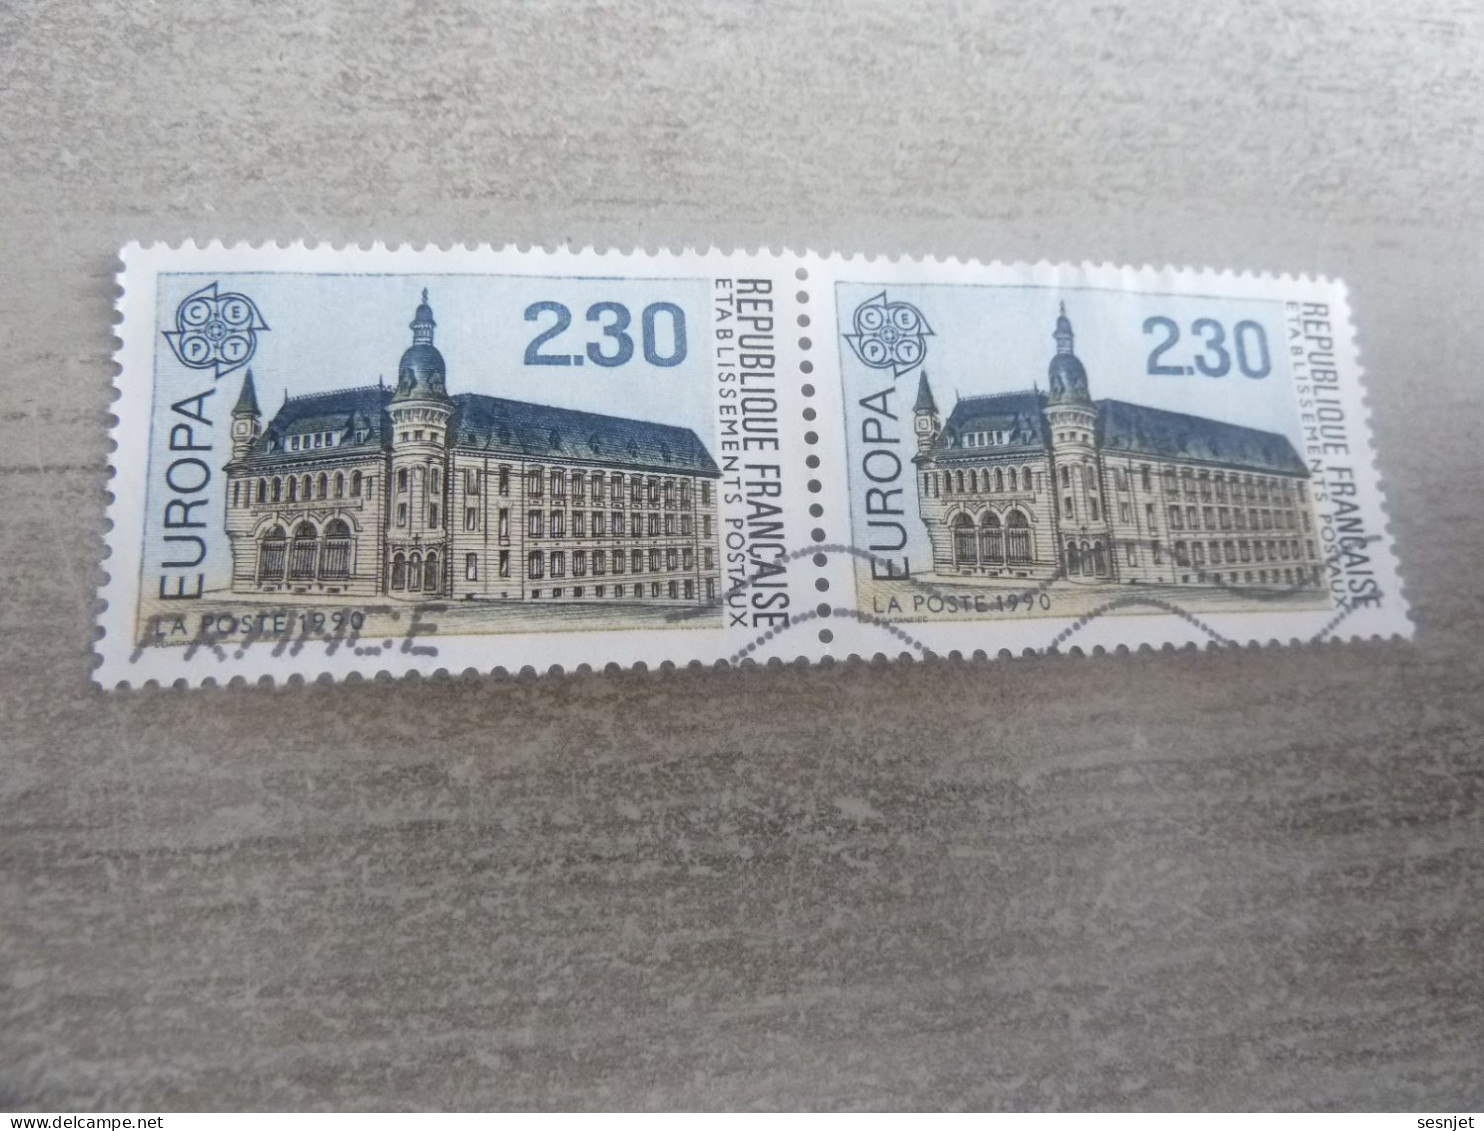 Macon - Bâtiment Postal - Europa Cept - 2f.30 - Yt 2642 - Brun, Noir Et Bleu Clair - Double Oblitérés - Année 1990 - - 1990